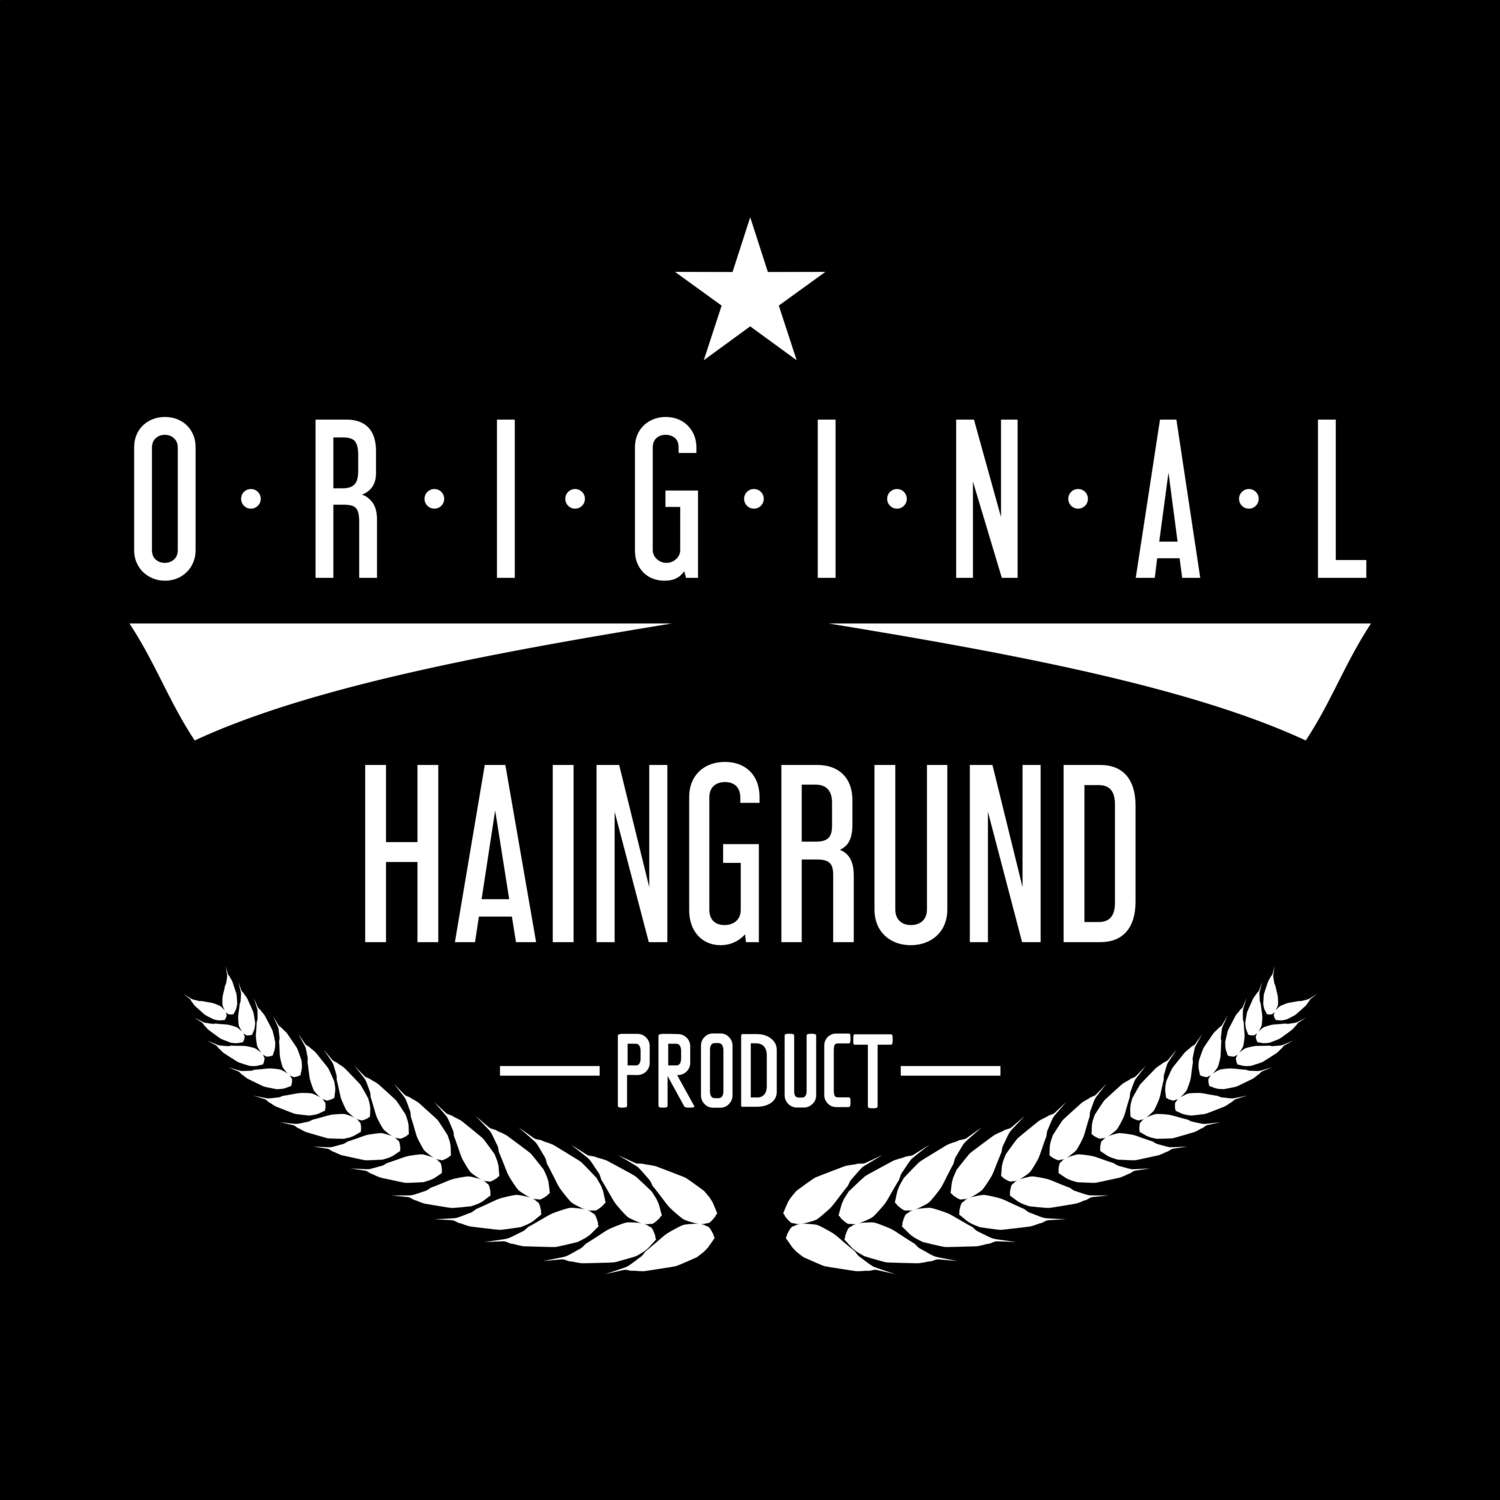 Haingrund T-Shirt »Original Product«